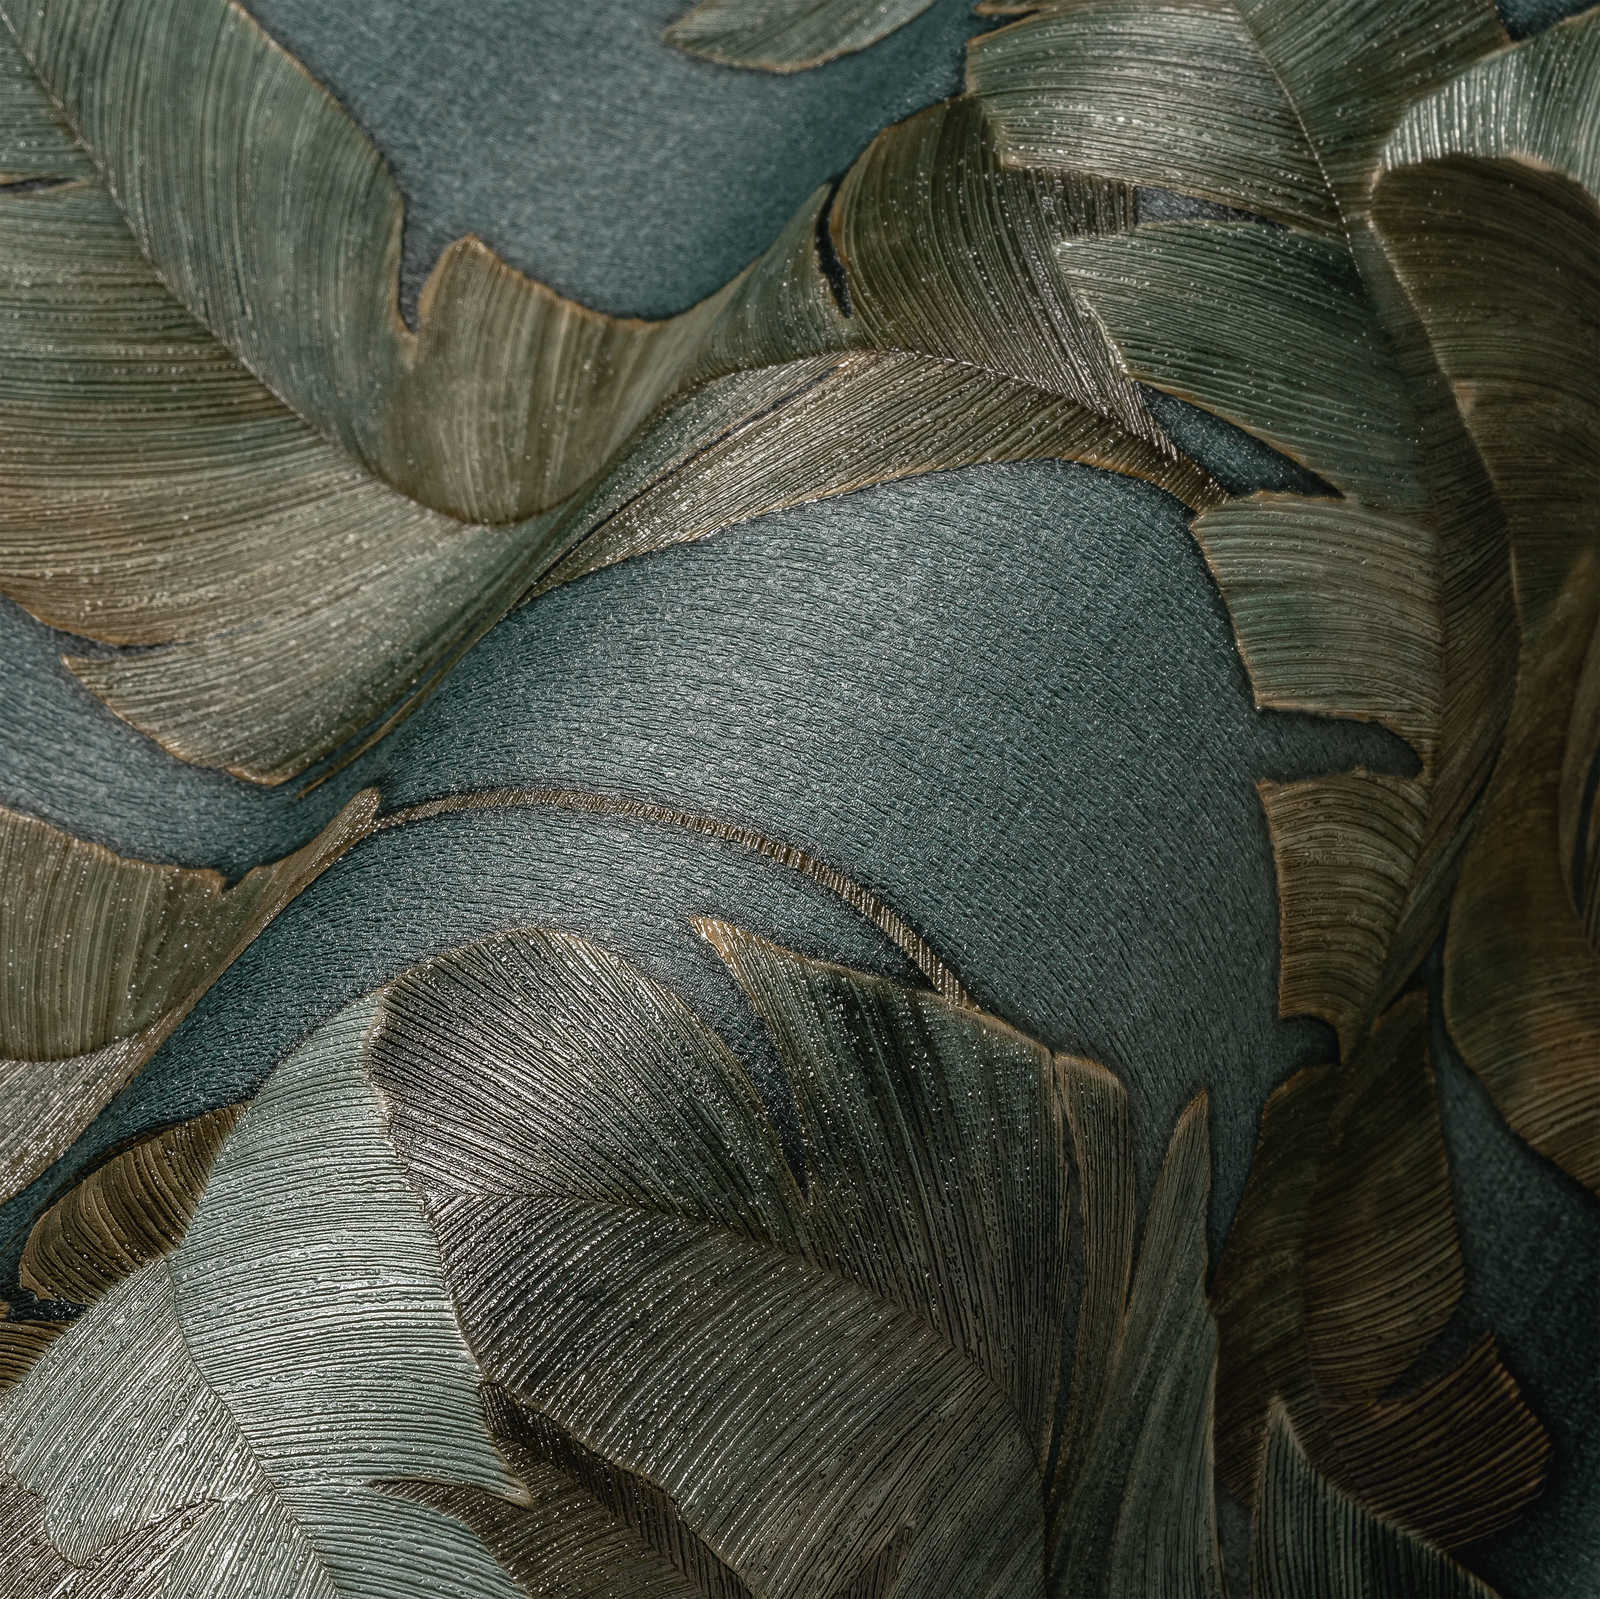             Vliesbehang met grote palmbladeren in donkere kleur - petrol, groen, bruin
        